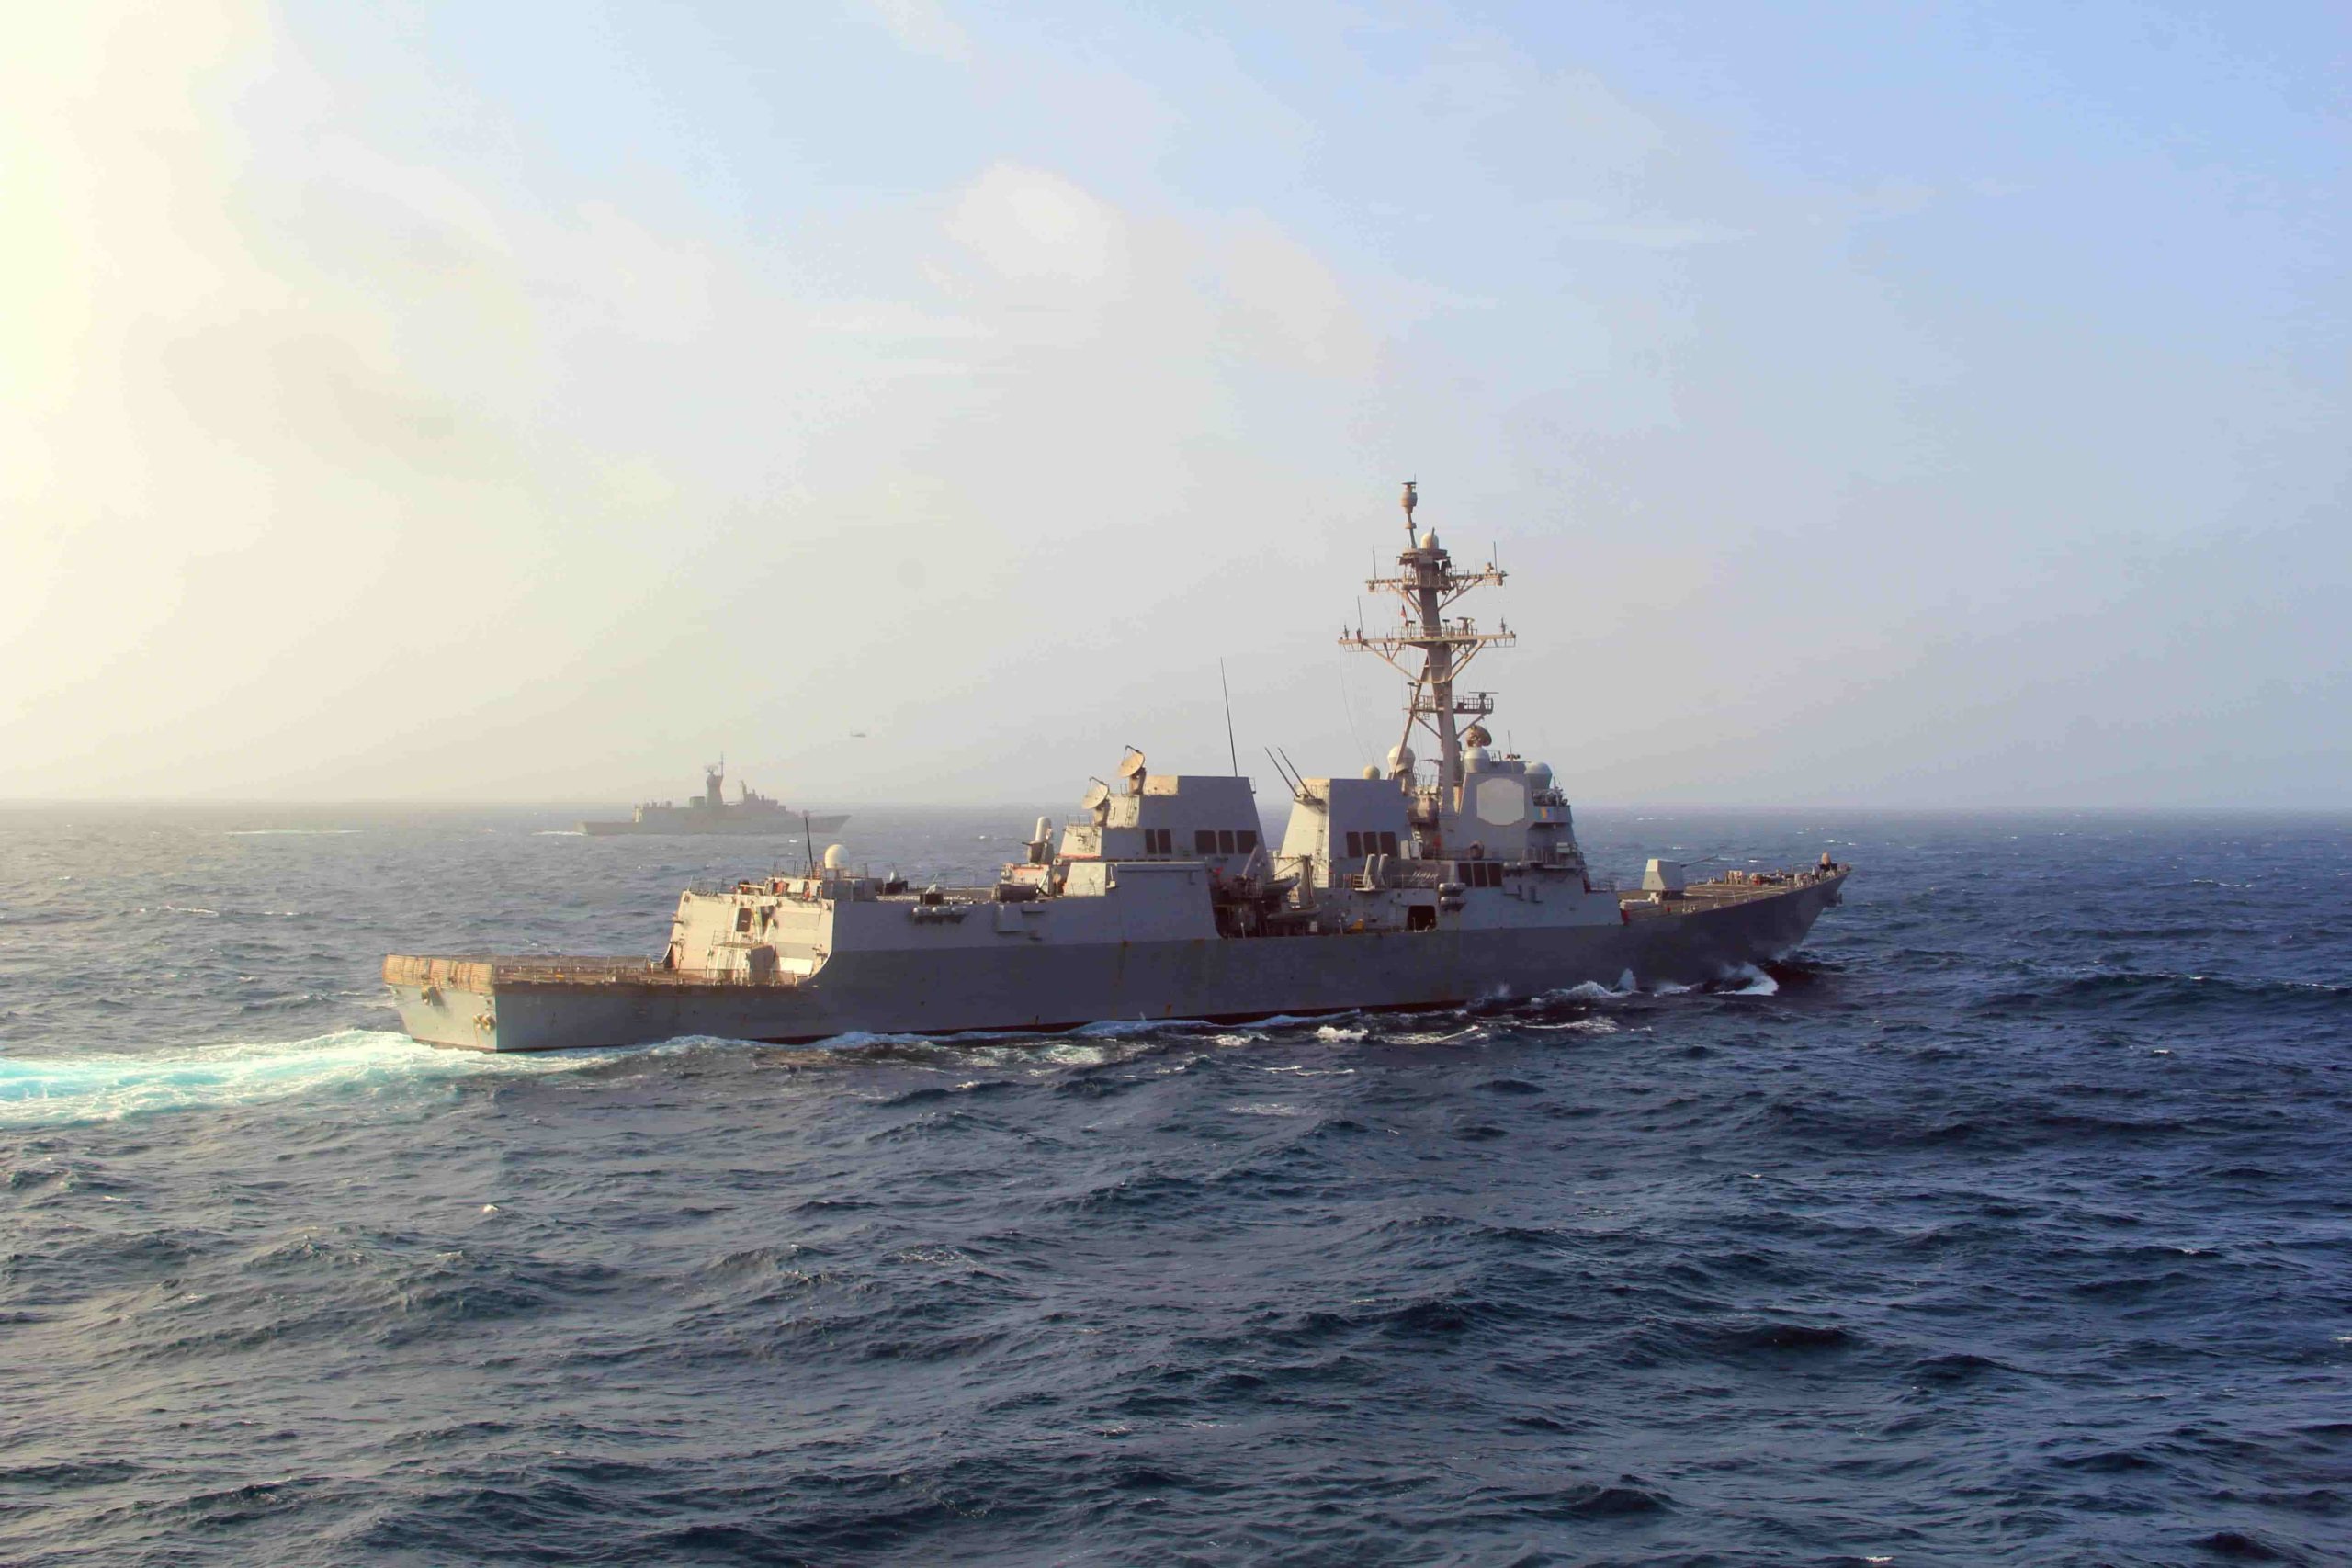 USS Mason off the coast of Yemen.  Photo by Mass Communications Specialist 3rd Class Janweb B. Lagazo.